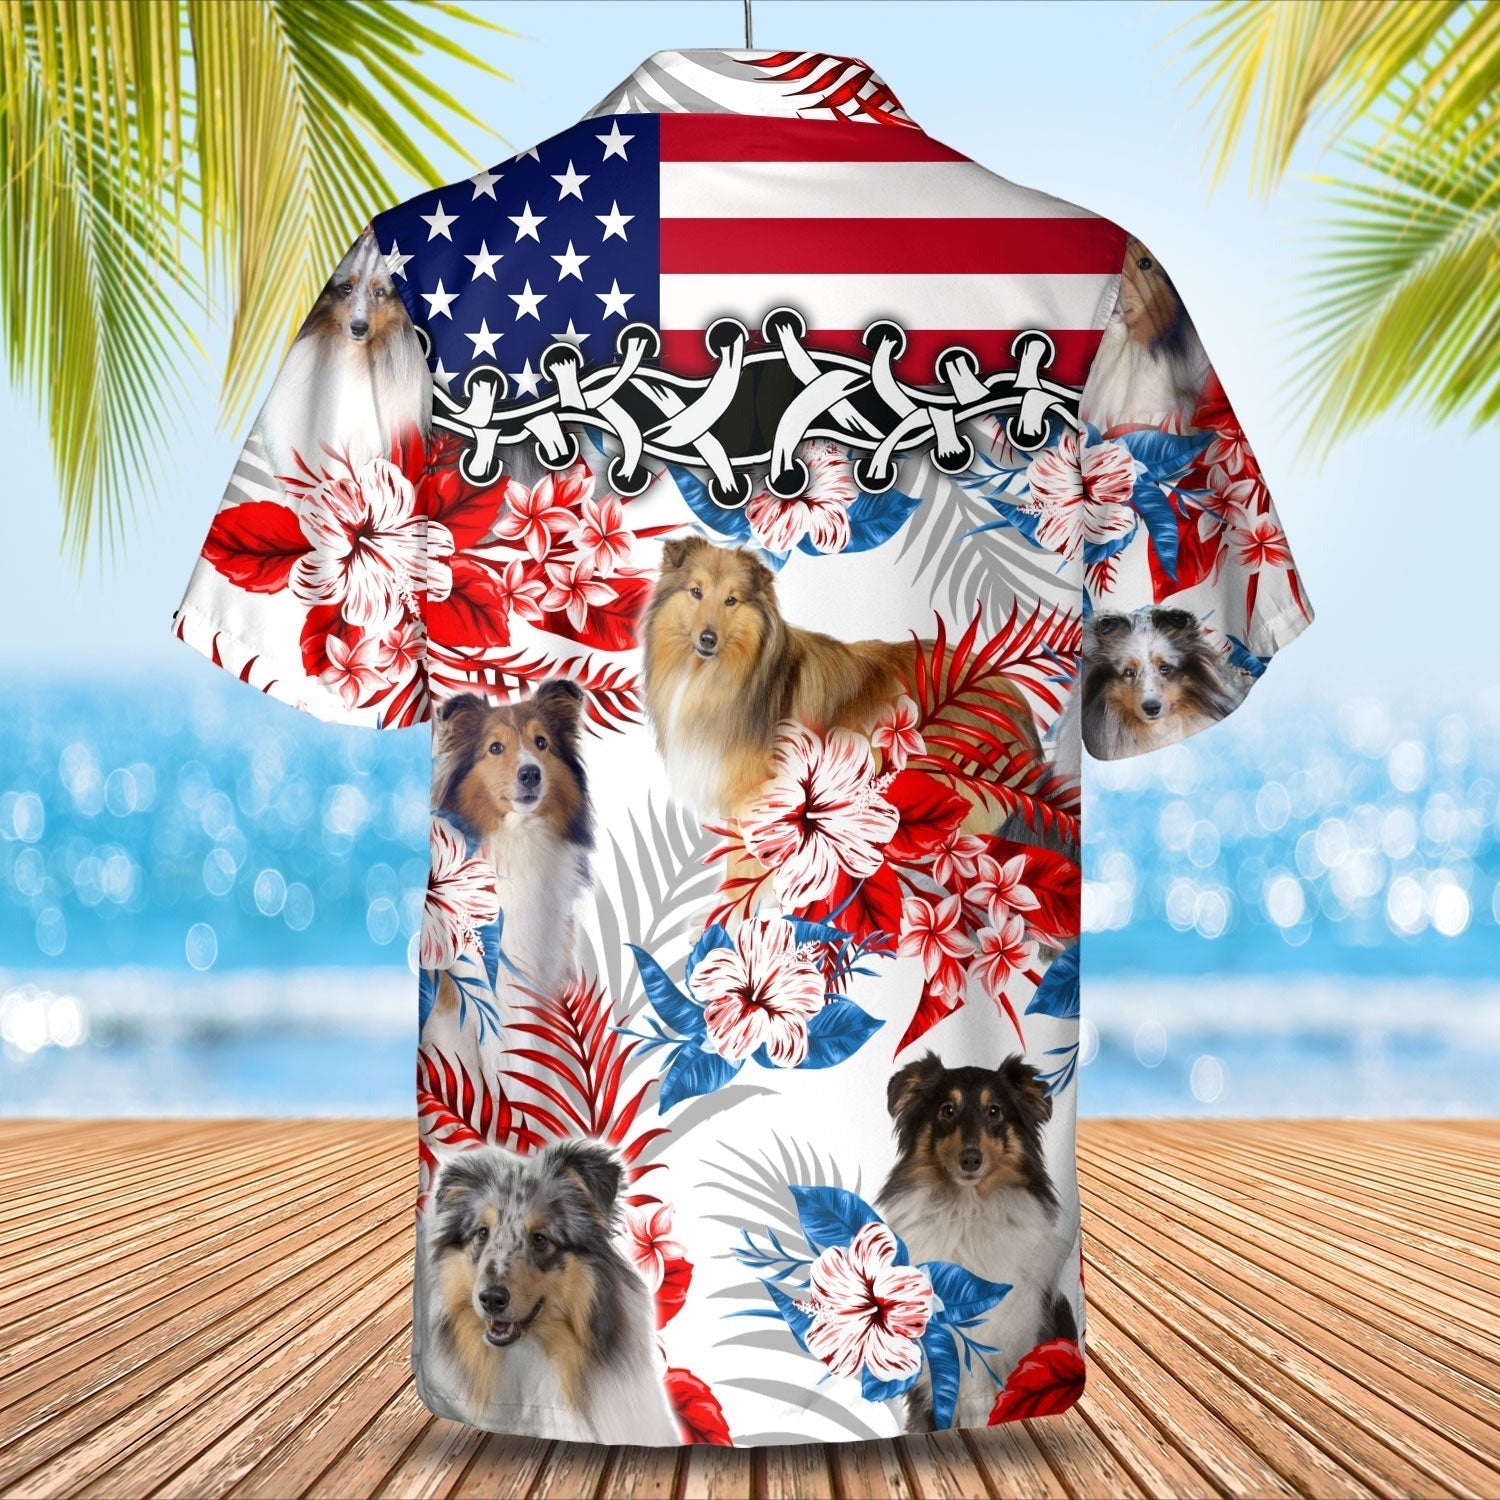 Shetland Sheepdog Hawaiian Shirt/ Cool Dog In Aloha Beach Shirt Full Printed/ Dog Hawaii Shirt